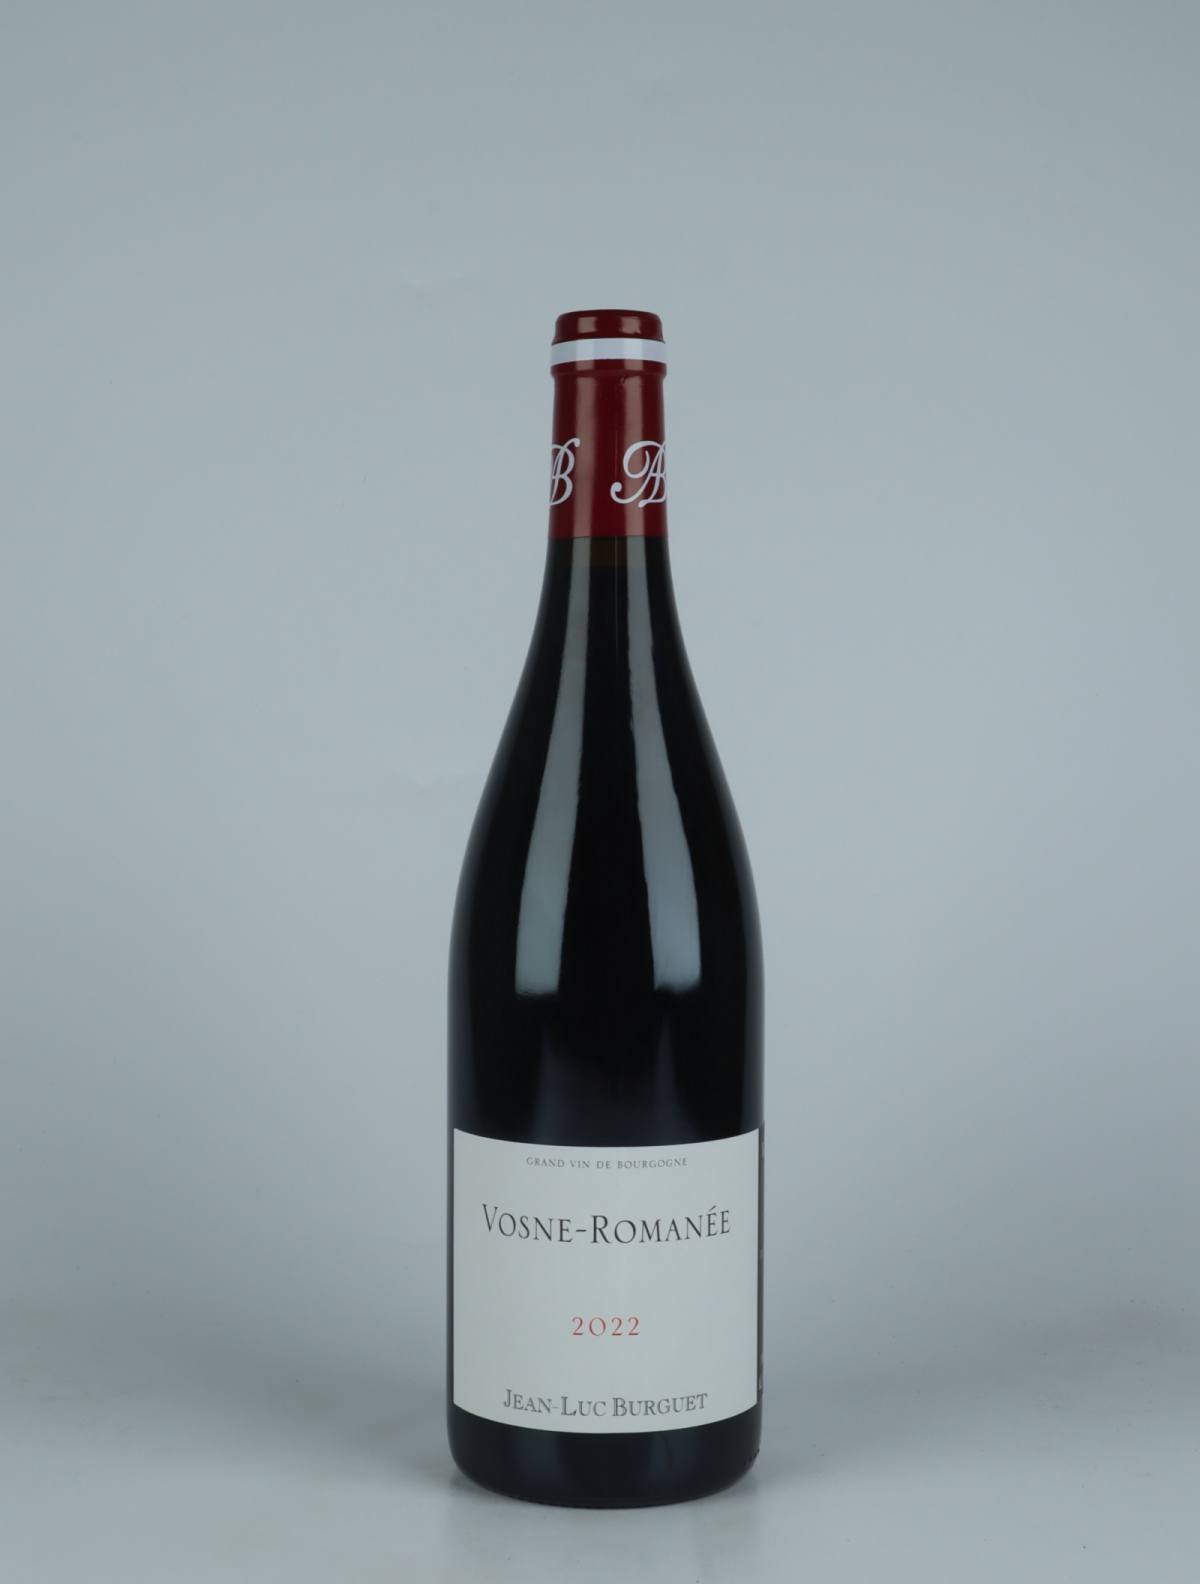 En flaske 2022 Vosne-Romanée Rødvin fra Jean-Luc & Eric Burguet, Bourgogne i Frankrig